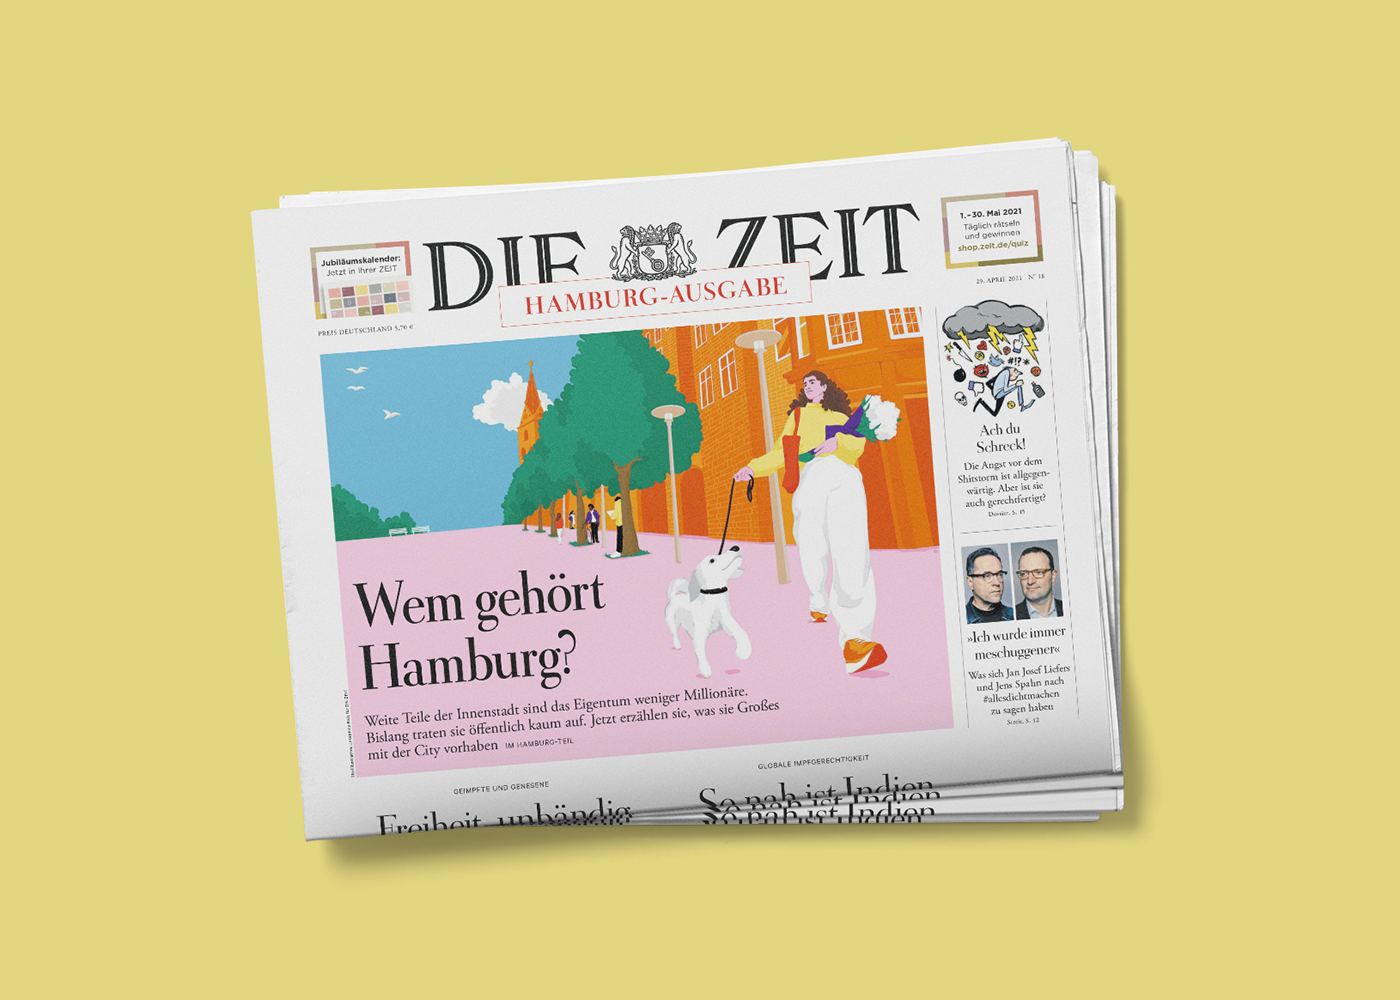 Coverillustration für das Zeitmagazin. Abgebildet ist eine Frau mit Hund in der Hamburger Innenstadt